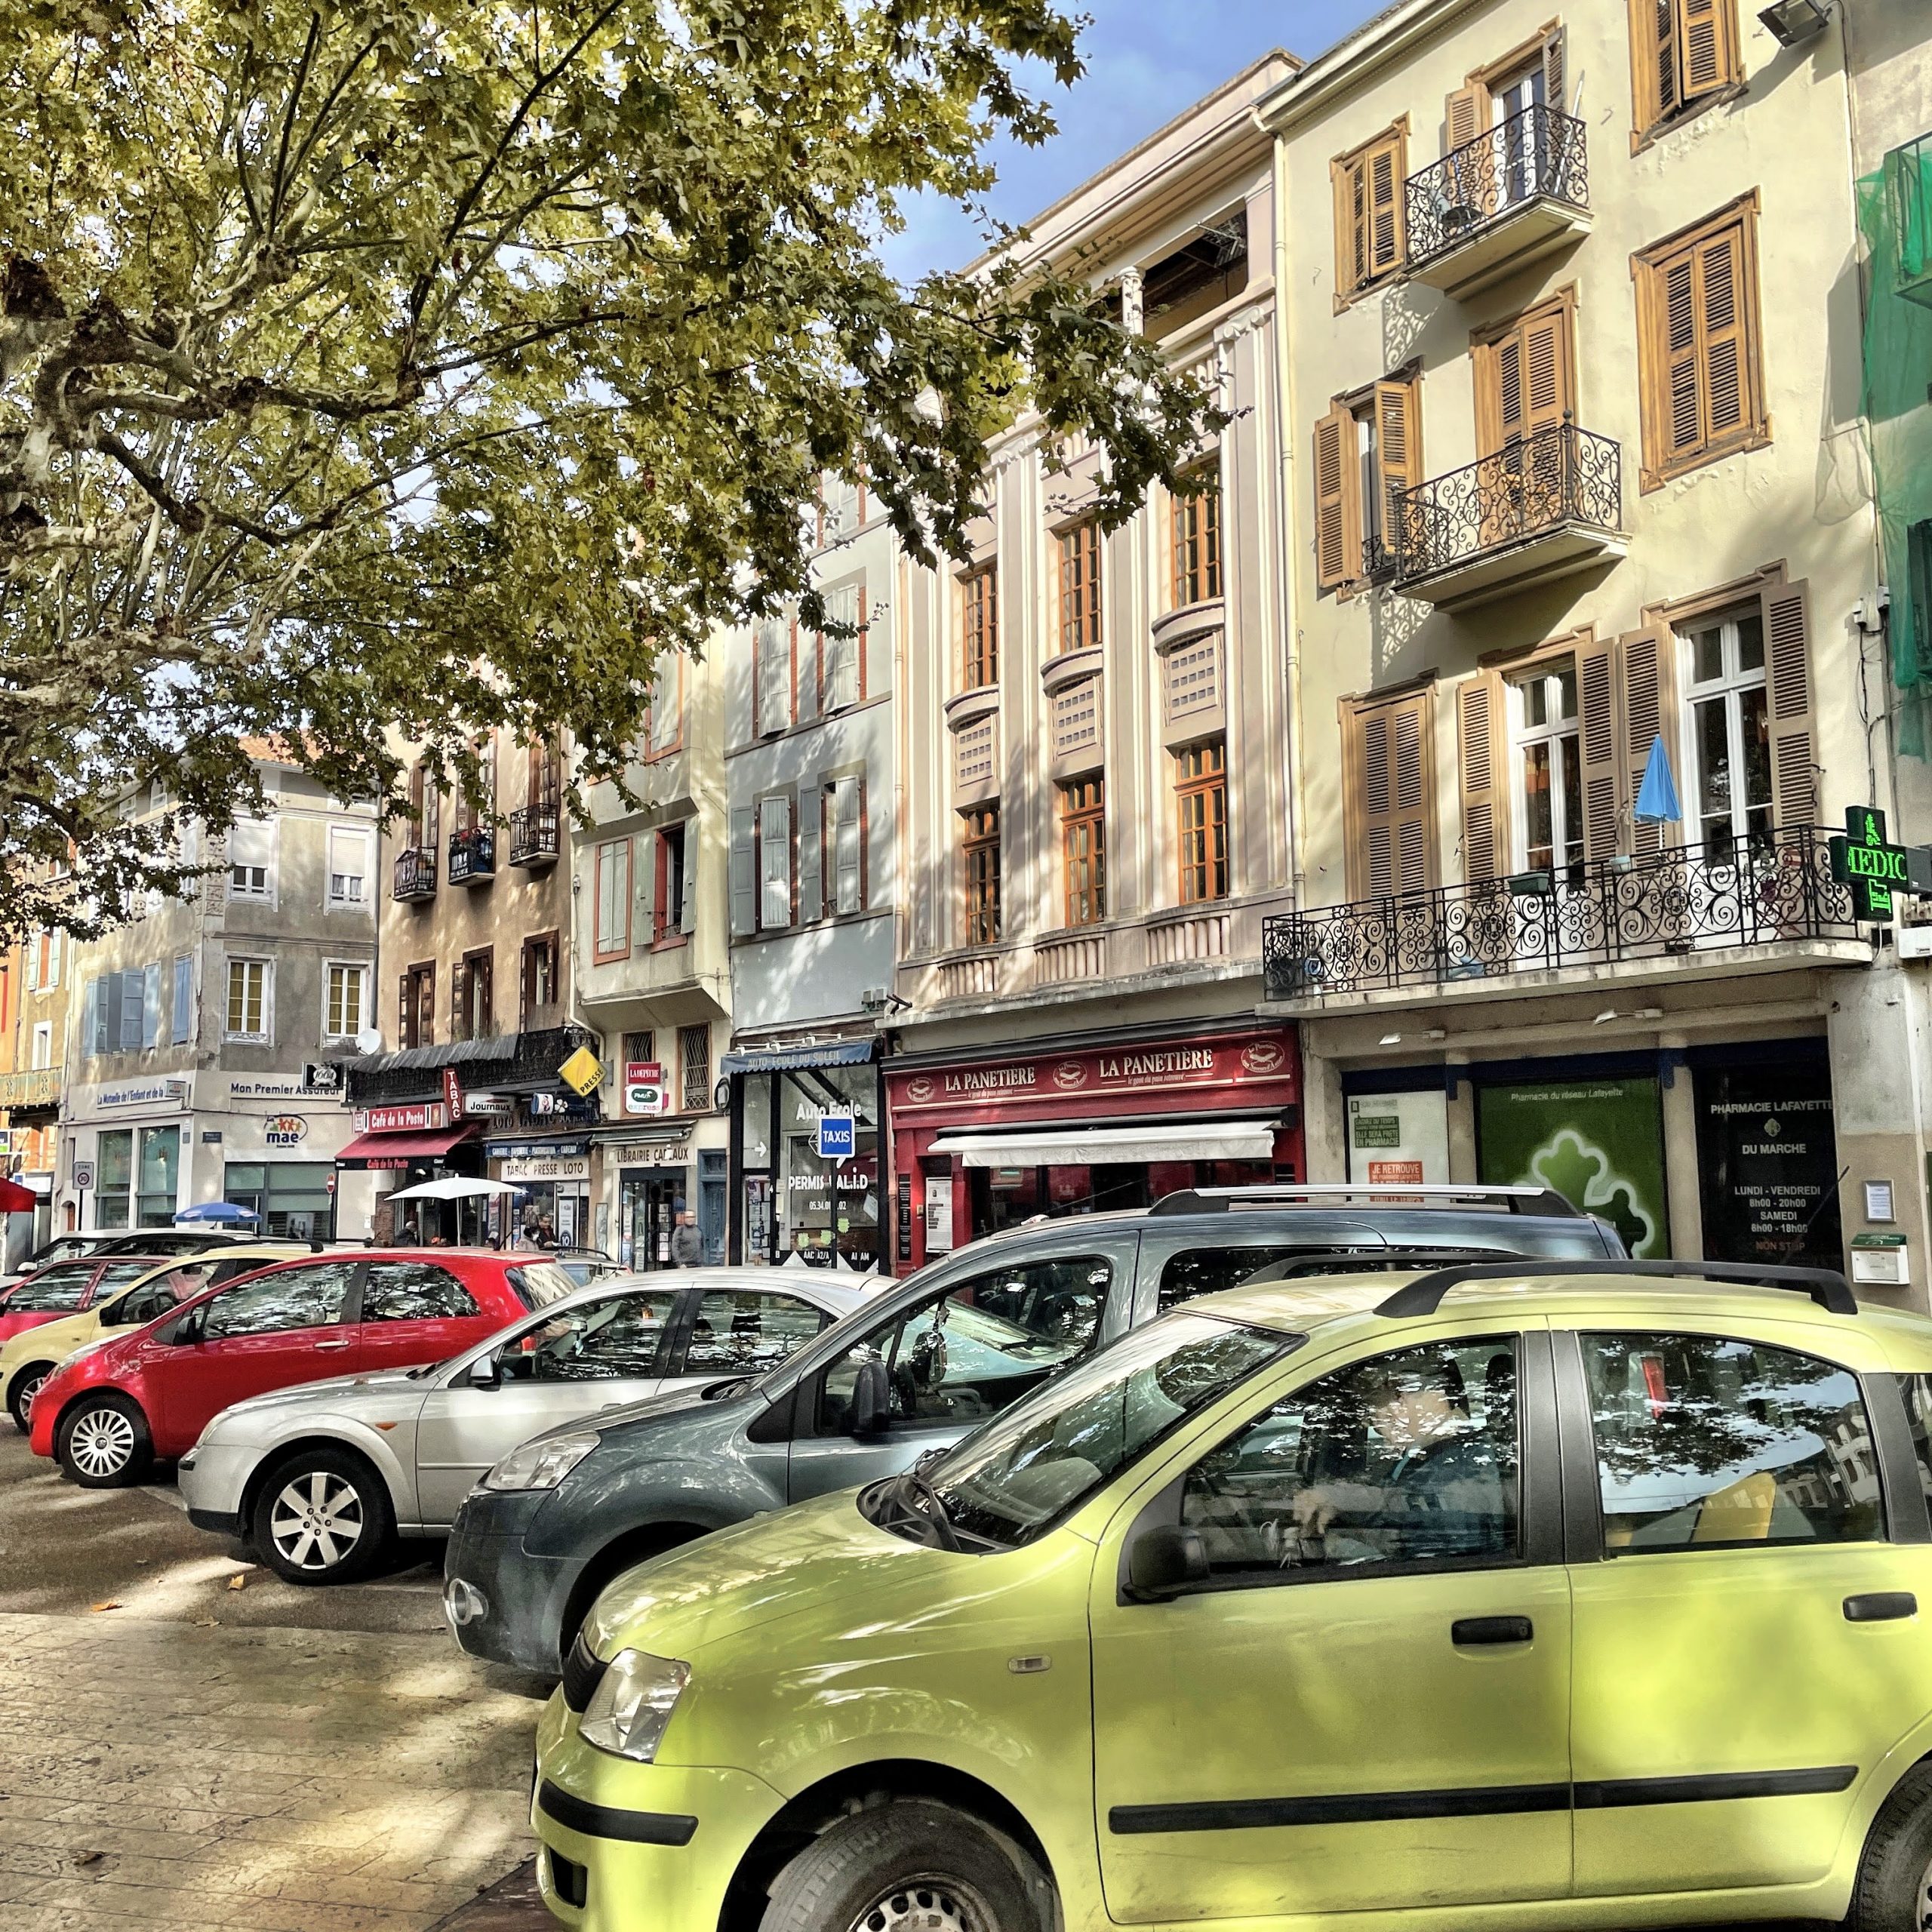 Ville la plus peuplée du département de l'Ariège, Pamiers se situe au cœur de la plaine de Basse-Ariège, à une vingtaine de kilomètres de la ville médiévale de Foix